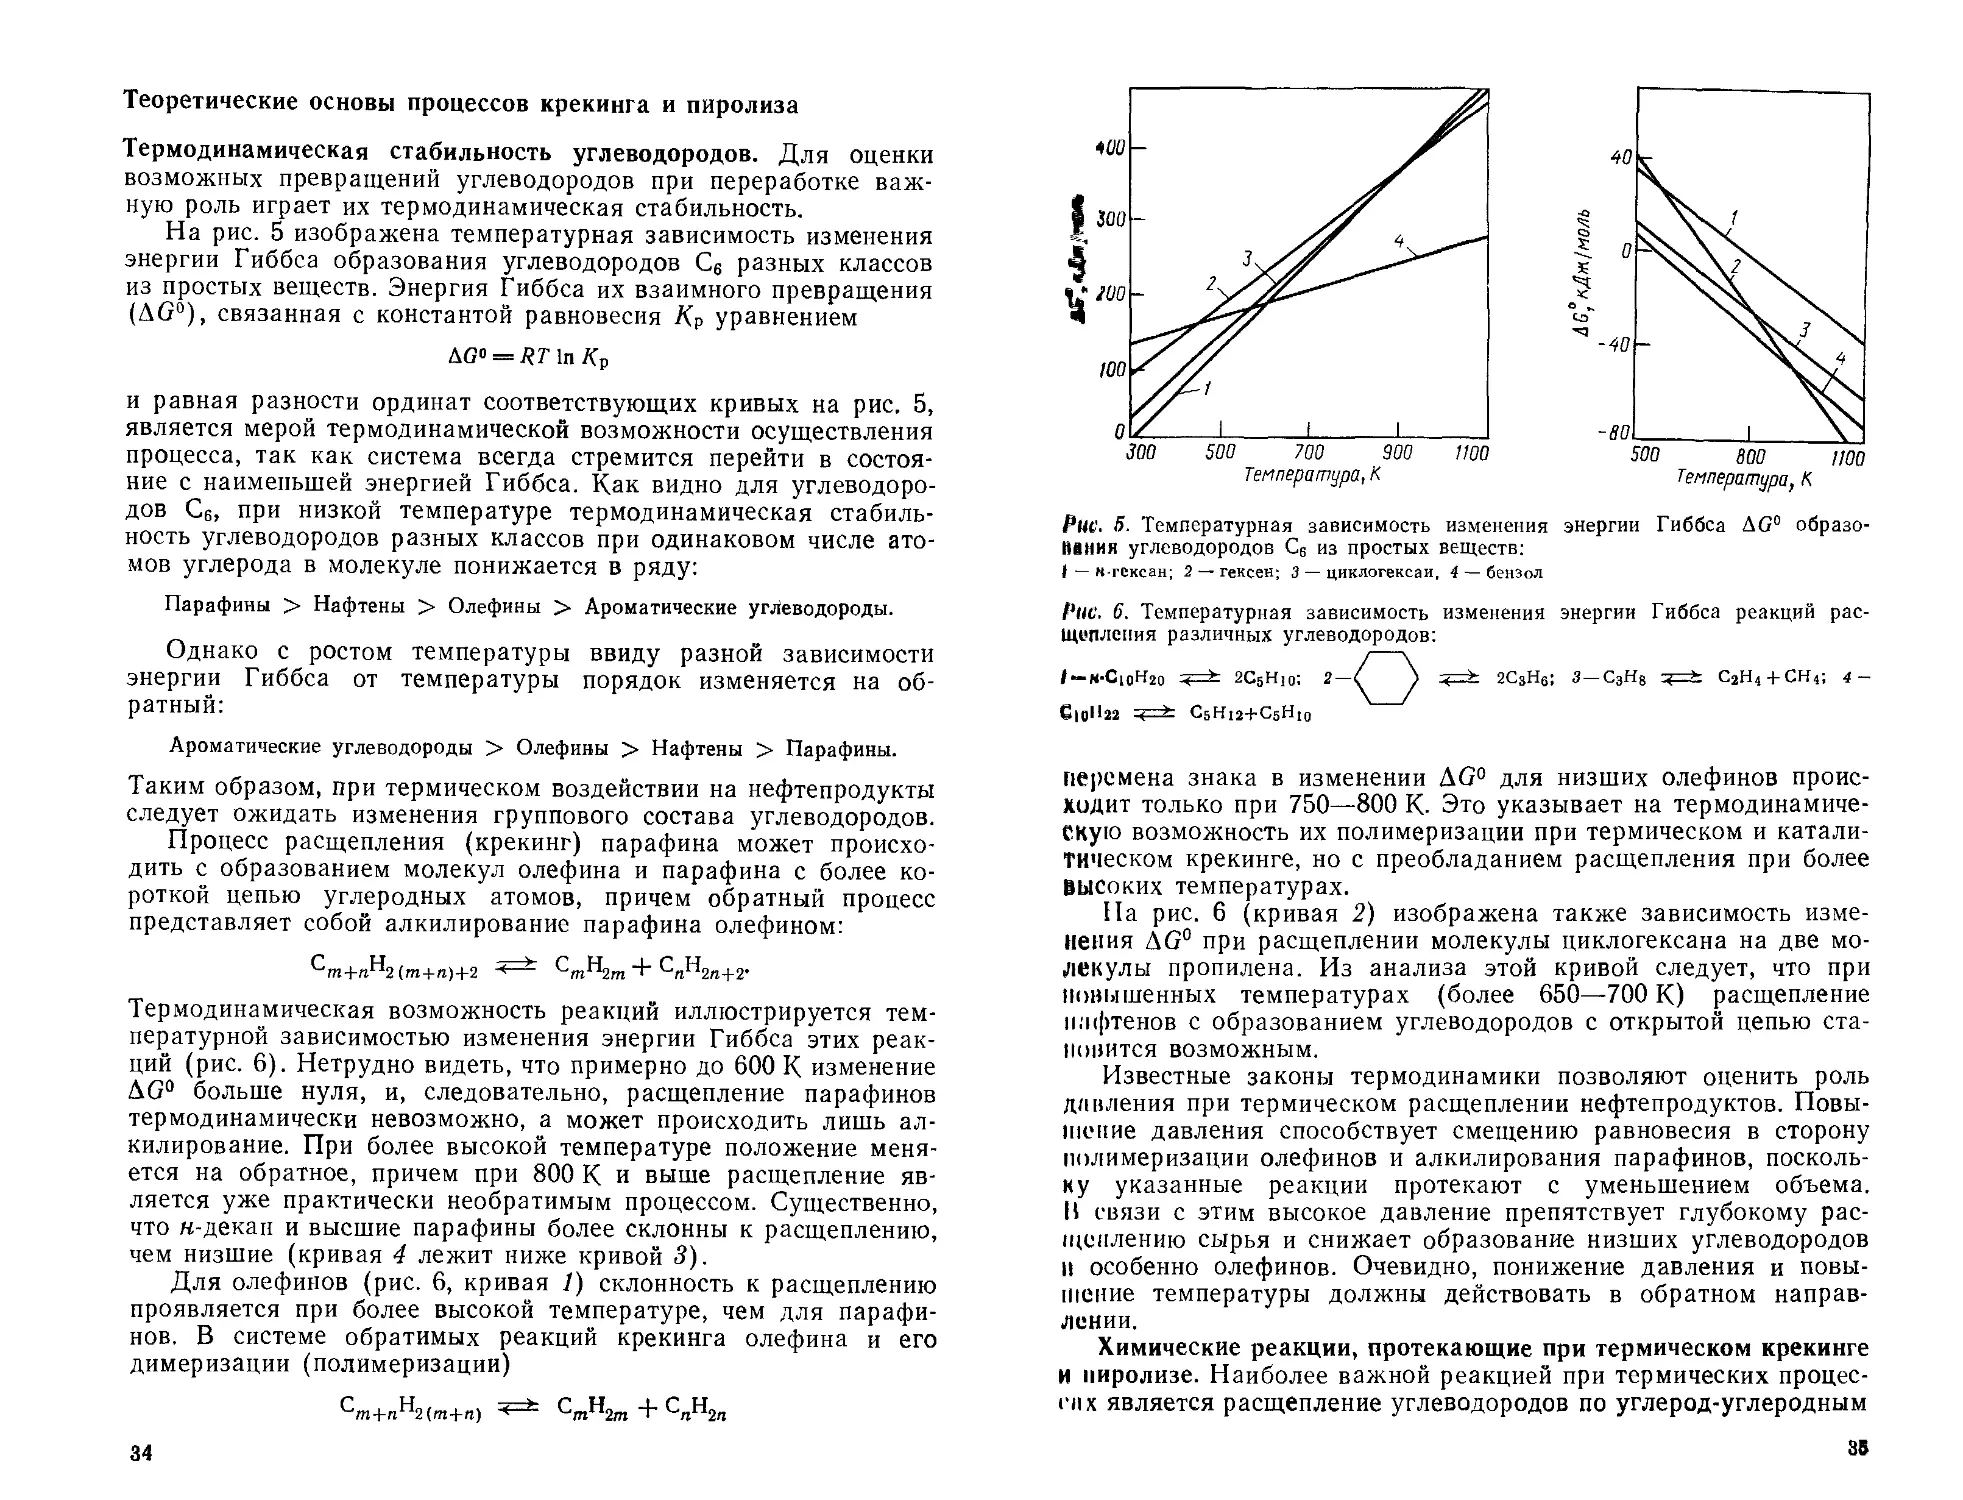 Теоретические основы процессов крекинга и пиролиза
Химические реакции, протекающие при термическом крекинге и пиролизе